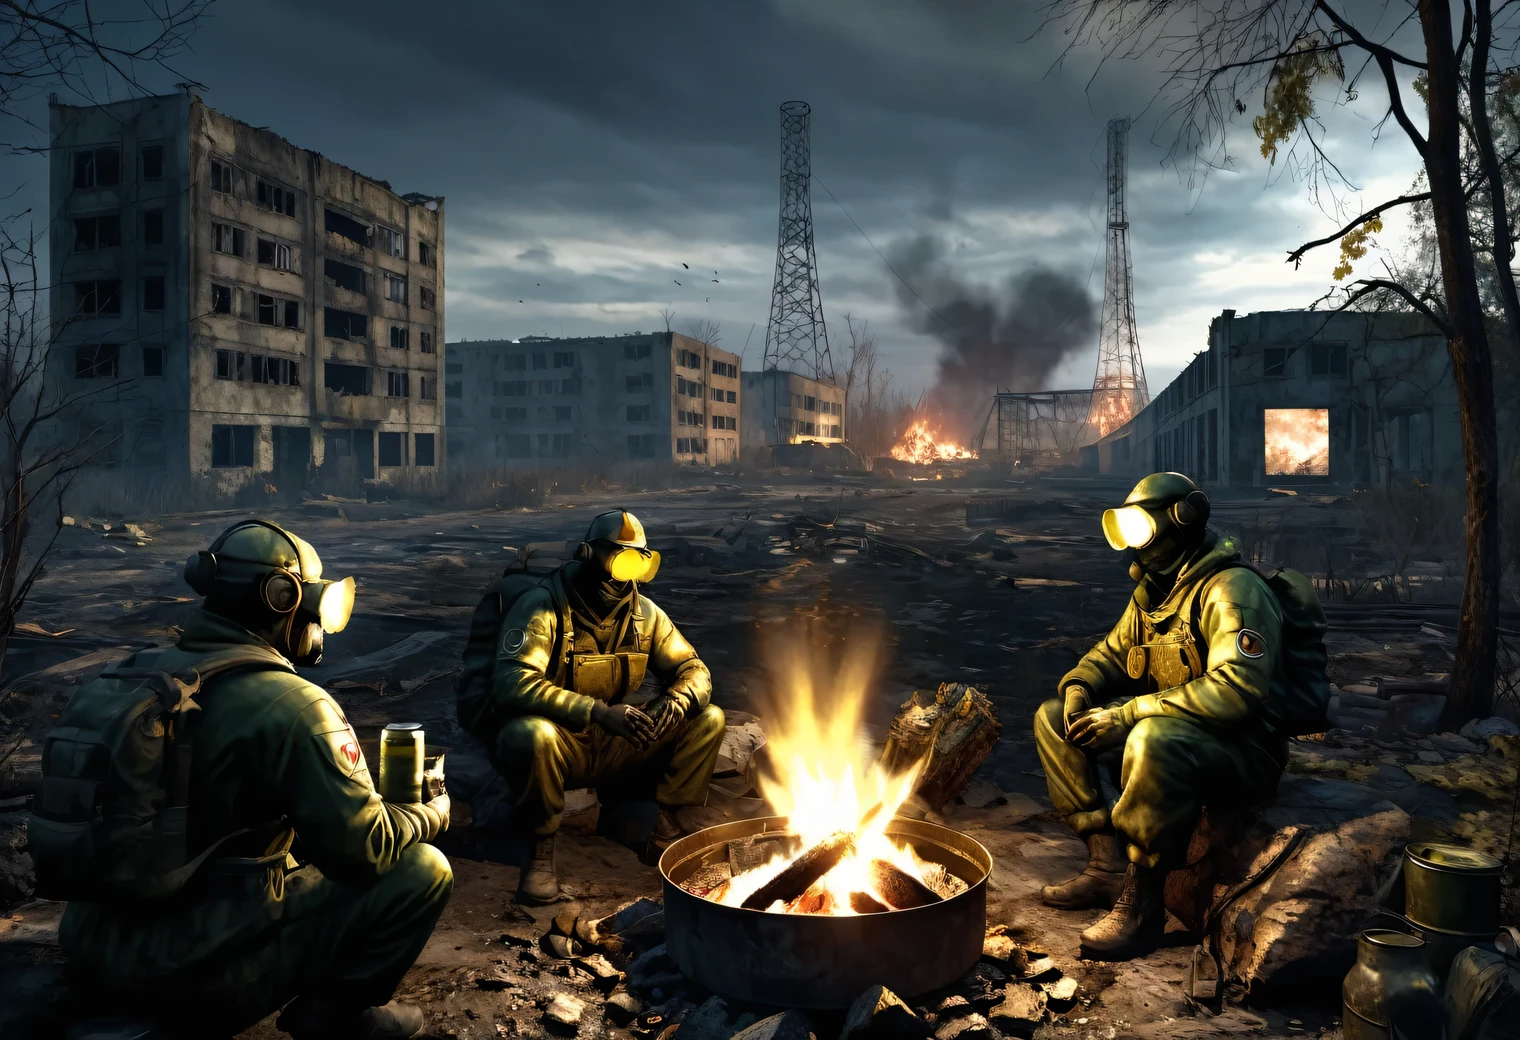 ทีhe theme is based on the game สtalker สhadow of Chernobyl, ภาพที่สมจริงในรูปแบบของวิดีโอเกมคอมพิวเตอร์ที่มีความละเอียดสูง, สภาพแวดล้อมของเมือง Pripyat ถูกทำลายด้วยภัยพิบัติและเวลา, มองเห็นโรงไฟฟ้านิวเคลียร์เชอร์โนบิลอยู่แต่ไกล, ความผิดปกติที่เป็นอันตรายที่มีพลังทำลายล้างอันมืดมนและสายฟ้าปรากฏอยู่รอบตัว, กลุ่มความผิดปกติเป็นประกายแวววาว, ในเบื้องหน้ามีสตอล์กเกอร์ 4 คนนั่งอยู่รอบกองไฟและกินอาหารกระป๋องท่ามกลางซากปรักหักพัง, สตอล์กเกอร์ในชุดลายพรางและสตอล์กเกอร์, สิ่งประดิษฐ์ที่เร่าร้อนและวัตถุที่เป็นเอกลักษณ์สามารถมองเห็นได้ใกล้กับซากปรักหักพัง, ส.ที.ก.ล.เค.มันคือ.ร. โครงการ, ความละเอียด 32k, การประมวลผลภาพยนตร์, ปรับพื้นผิวให้เรียบสูง,